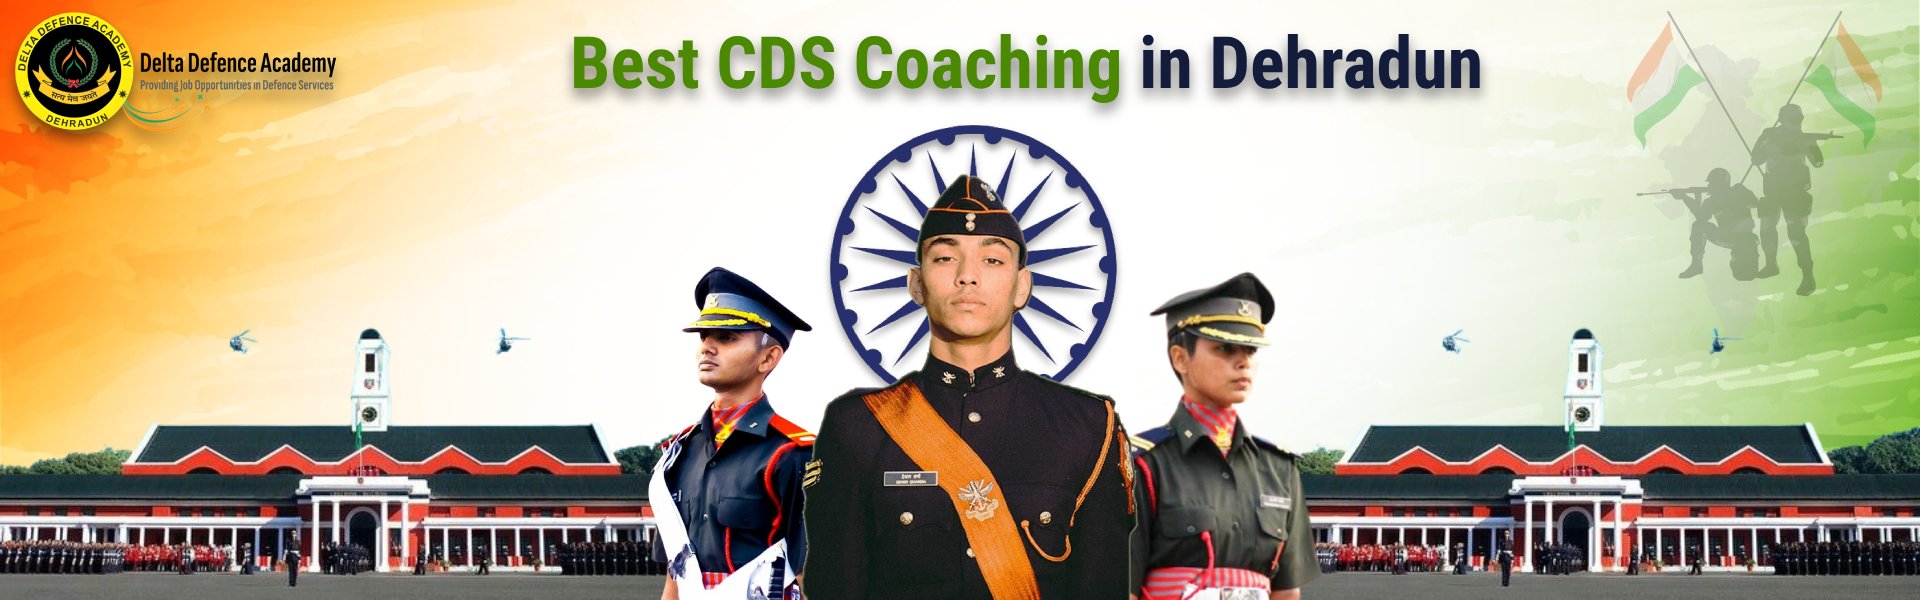 best cds coaching in dehradun delta defence academy